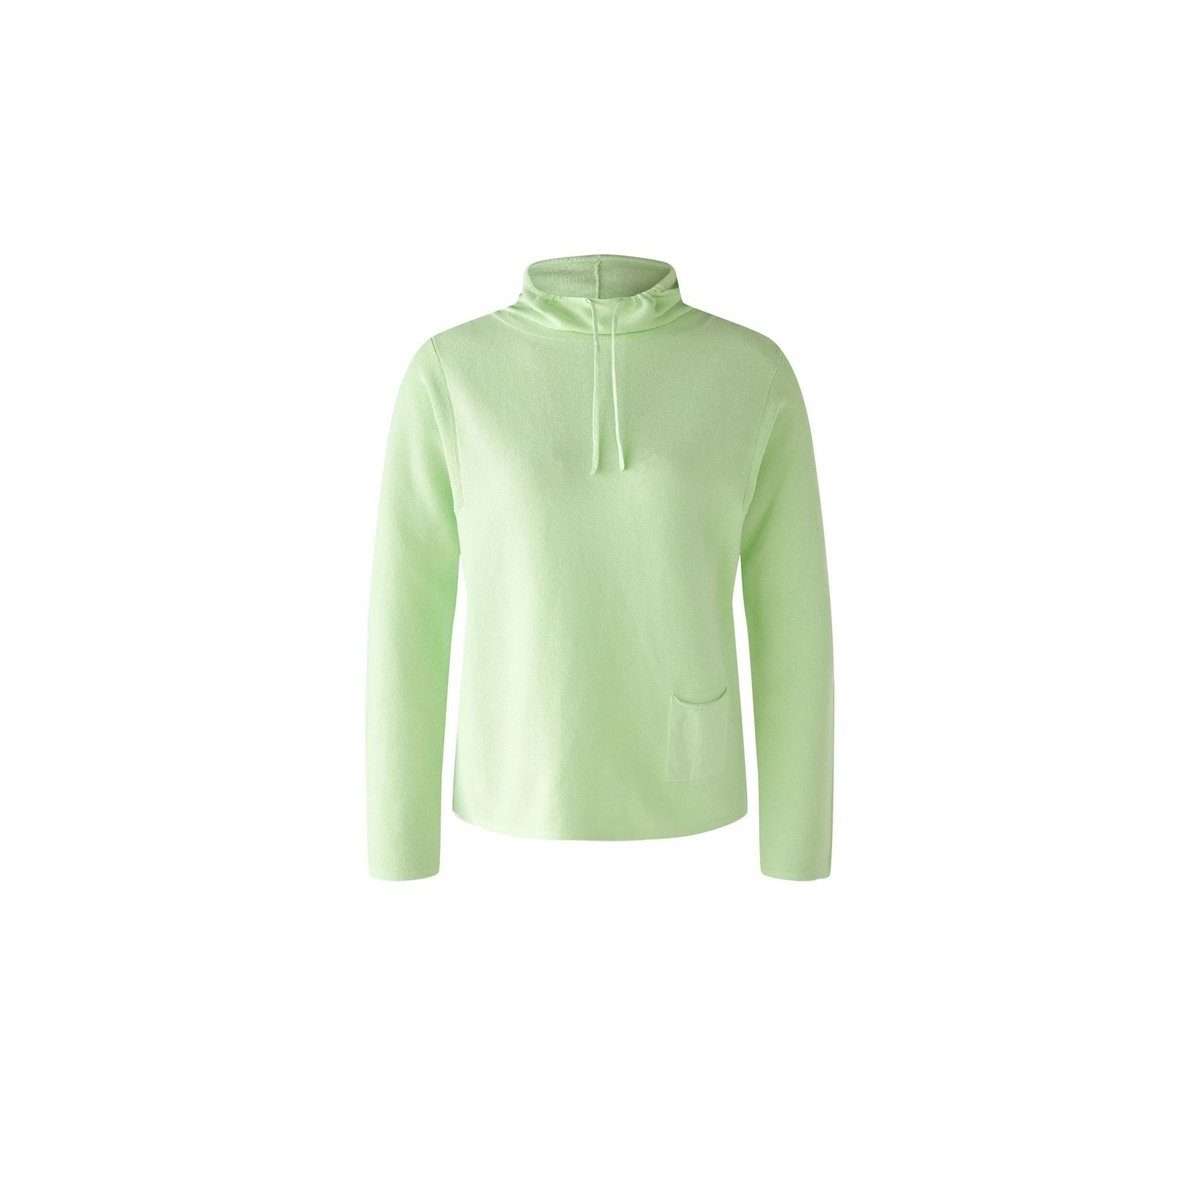 Длинный свитер светло-зеленого цвета (1 шт.)